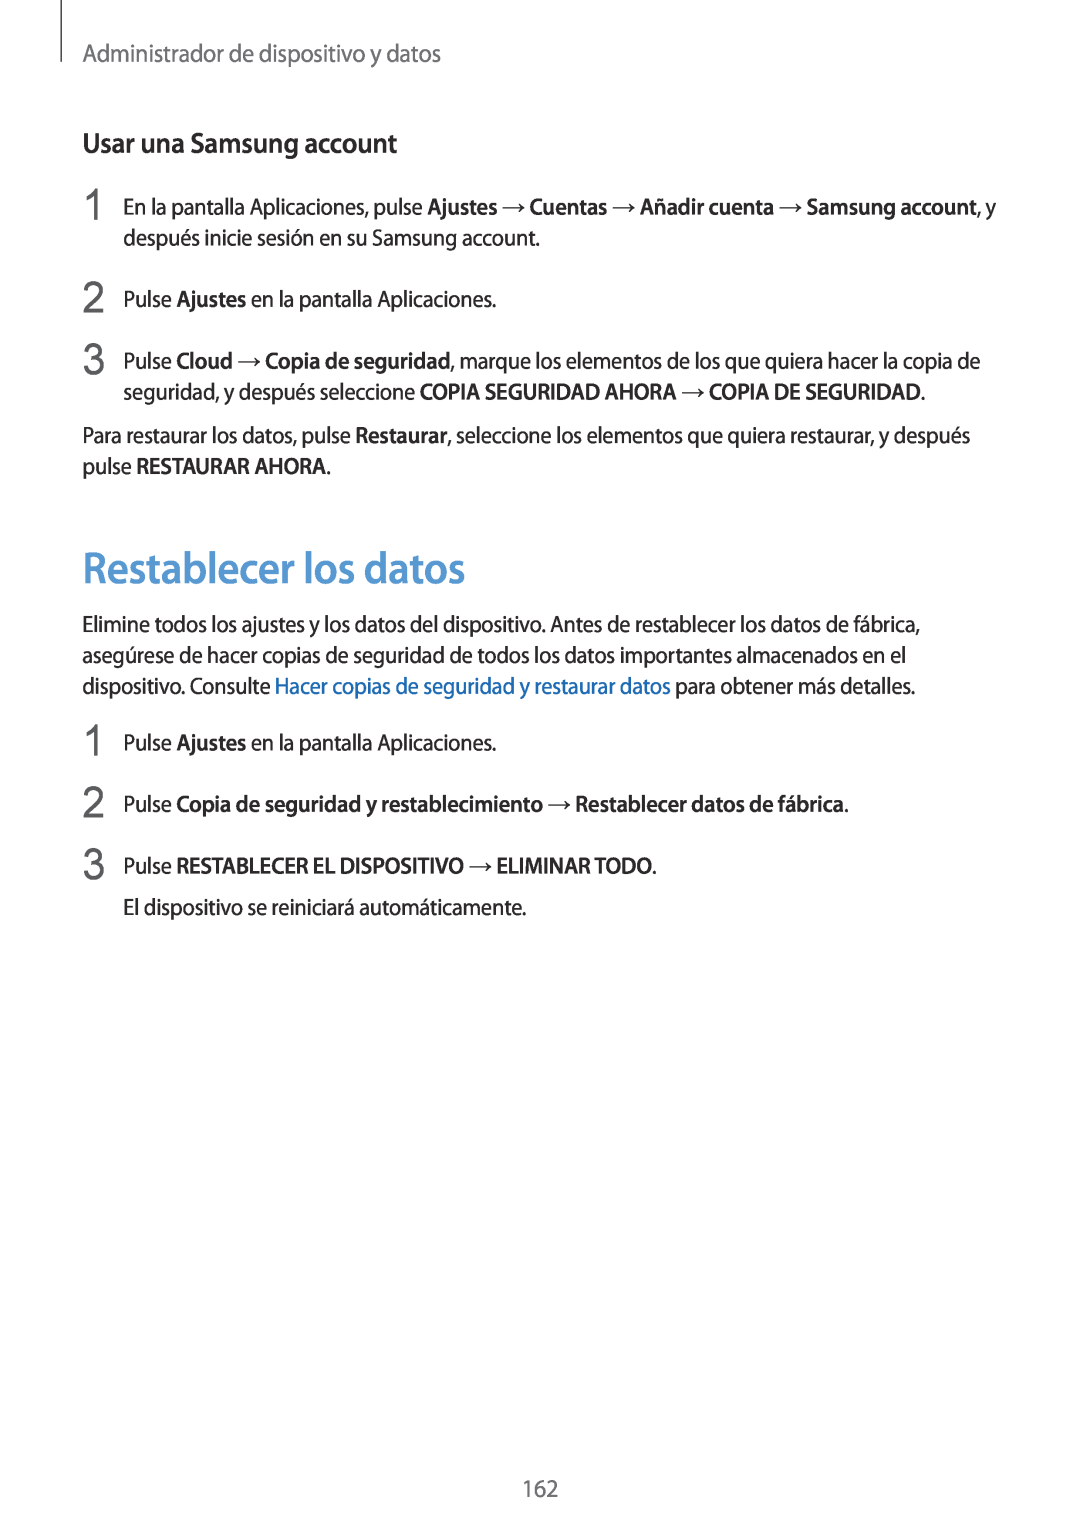 Samsung SM-G901FZKADBT Restablecer los datos, Usar una Samsung account, Pulse RESTABLECER EL DISPOSITIVO →ELIMINAR TODO 